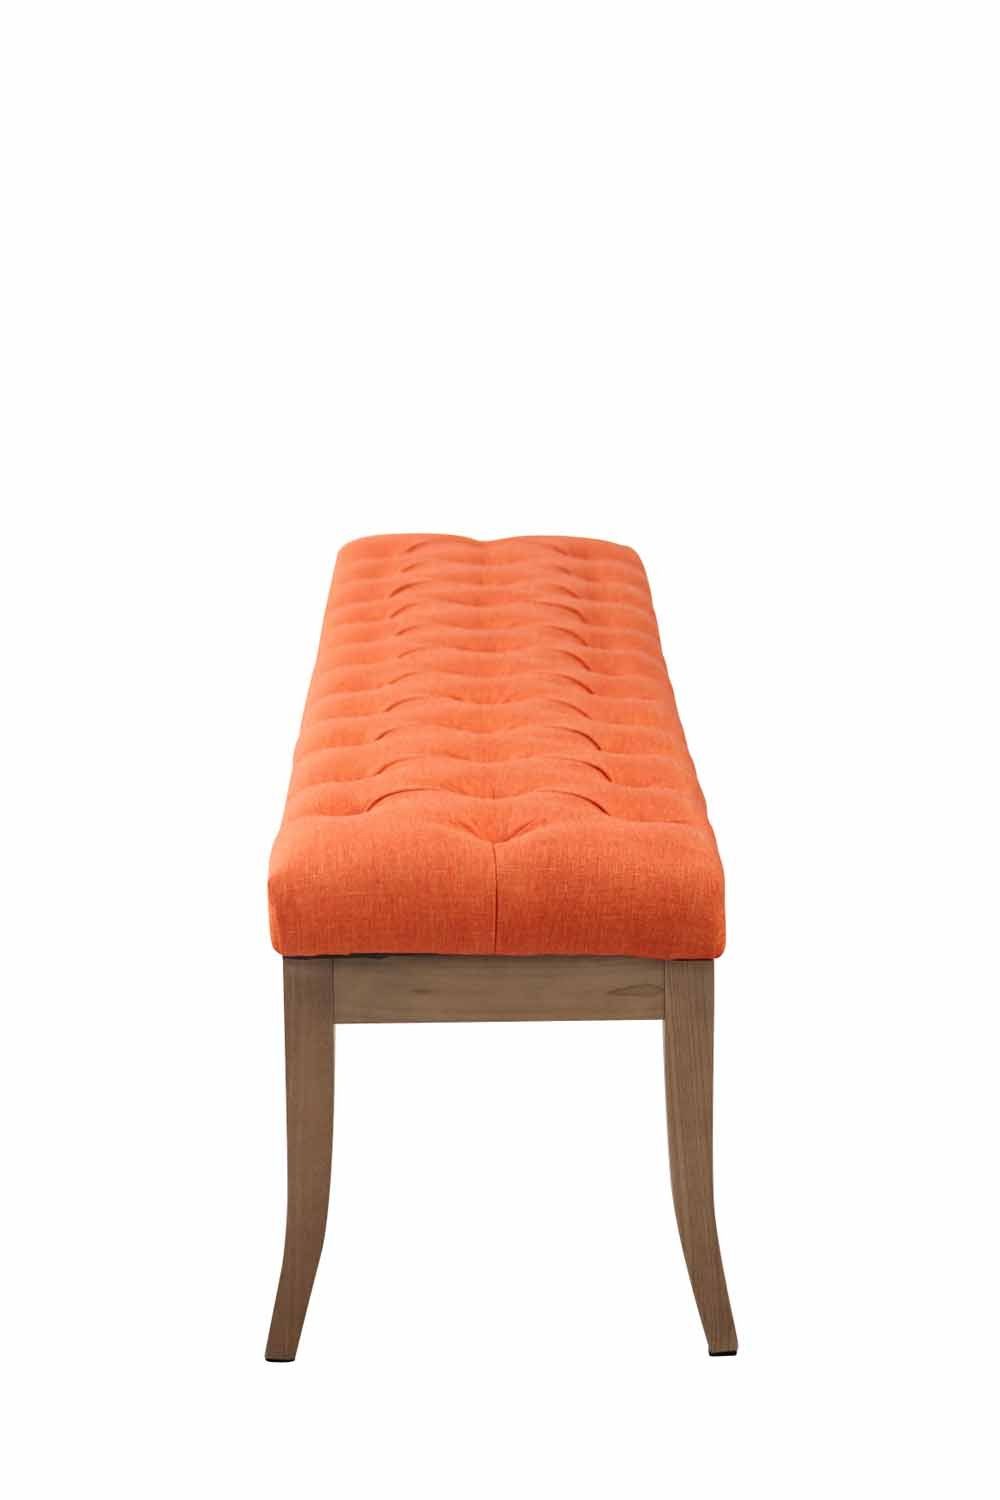 Stoff CLP Ramses mit hochwertiger Polsterung Sitzbank antik-hell, orange